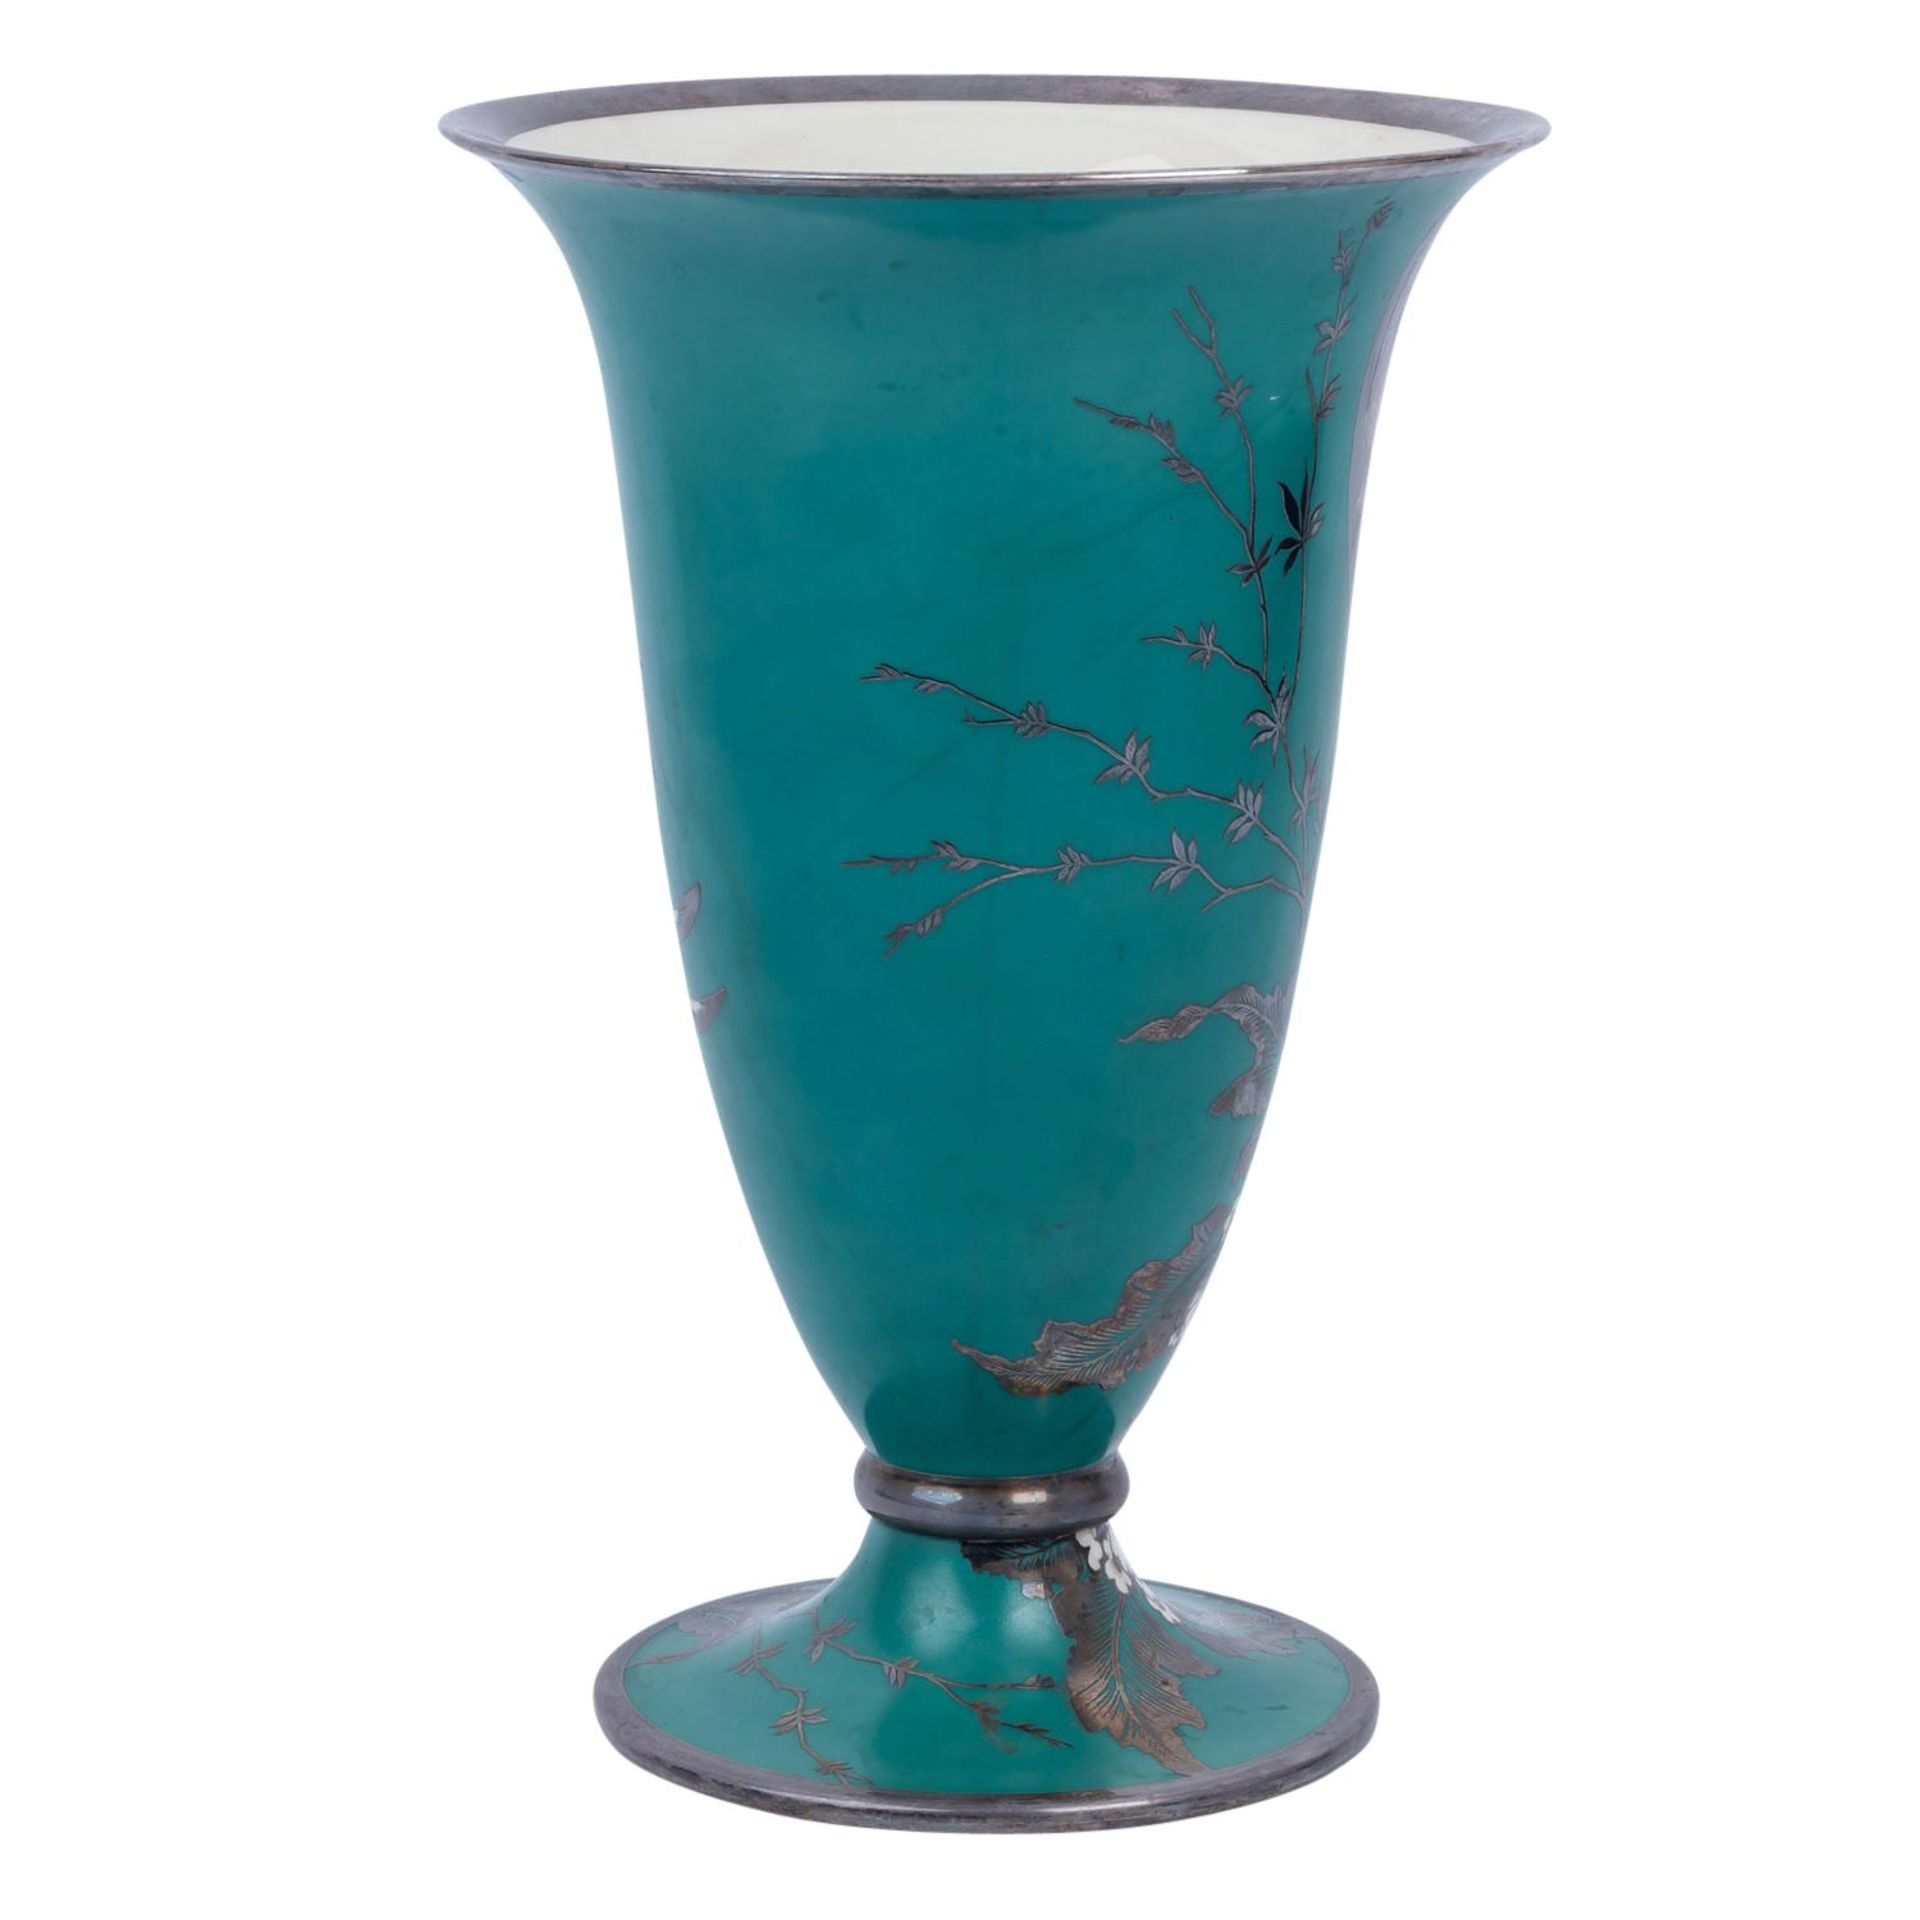 ROSENTHAL Vase mit Silber-Overlay, 1940. - Bild 3 aus 6